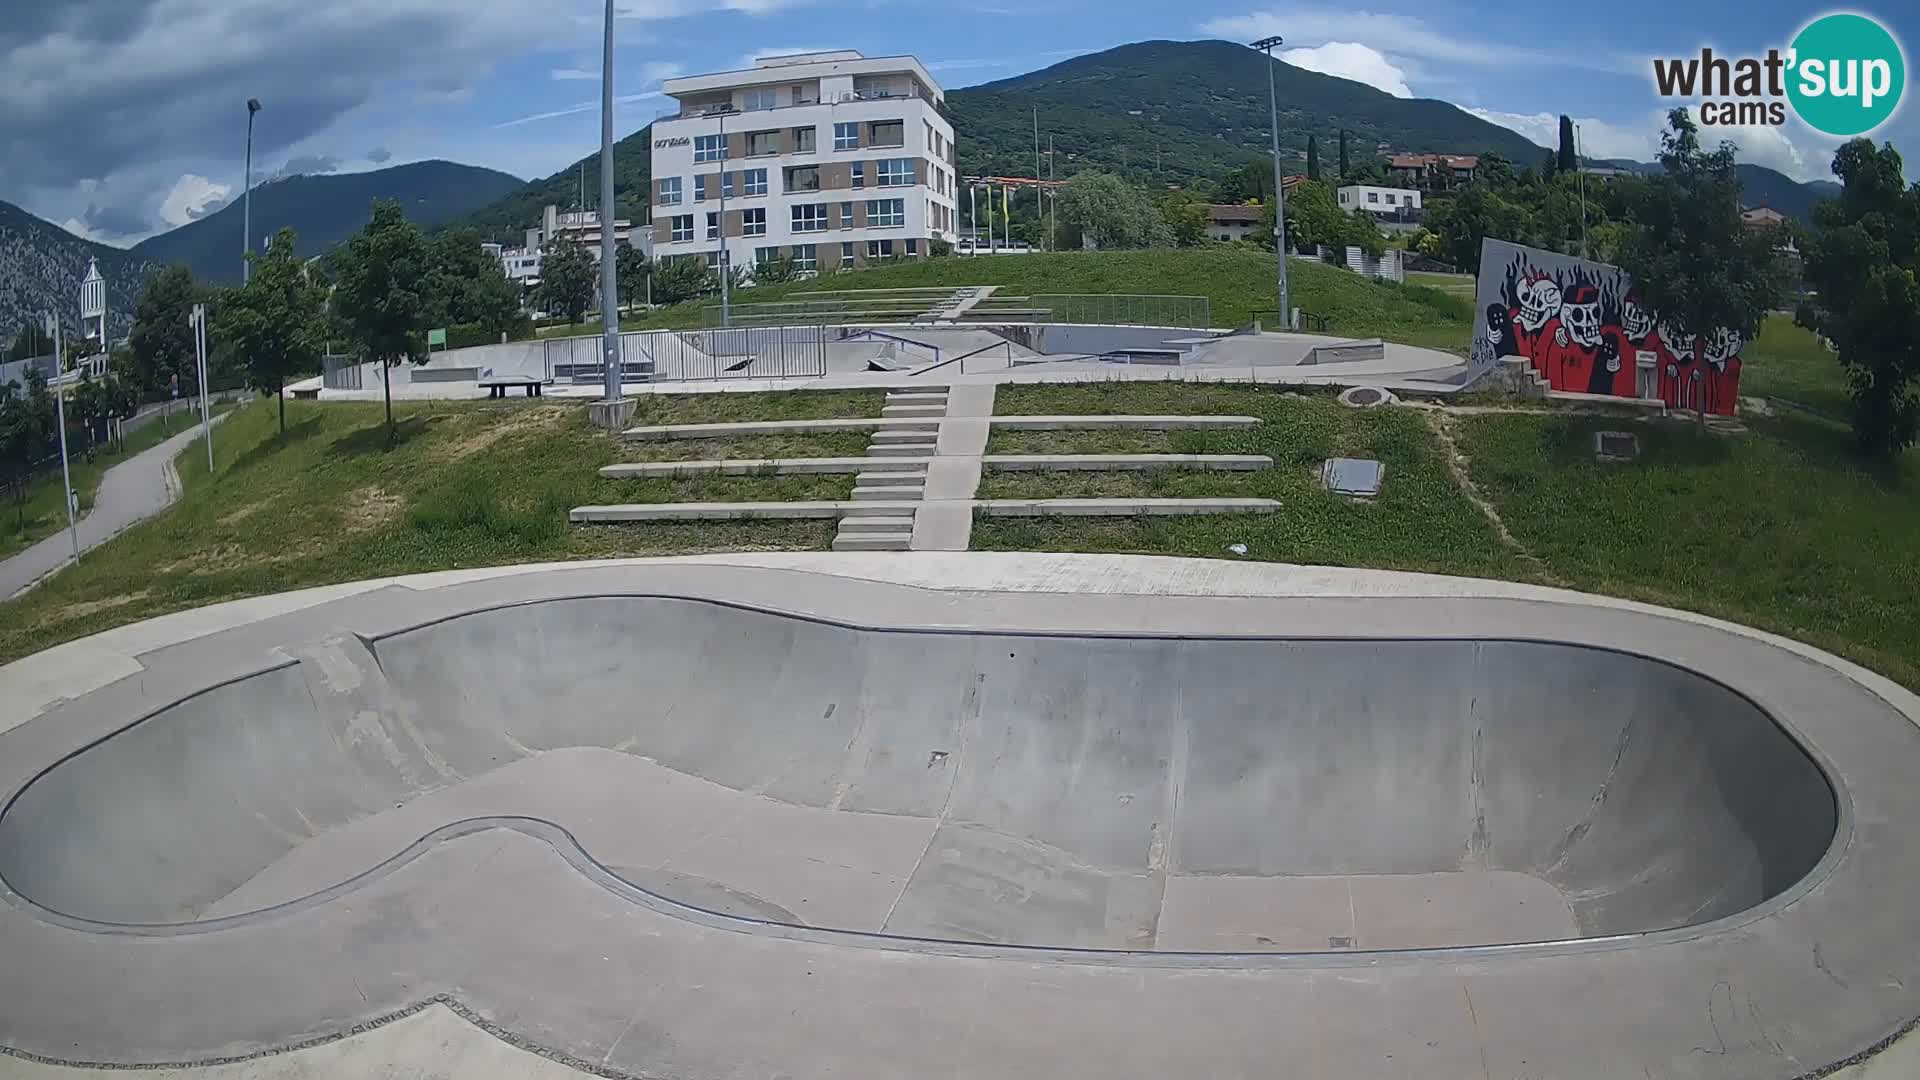 Skate park web kamera Nova Gorica – Slovenia